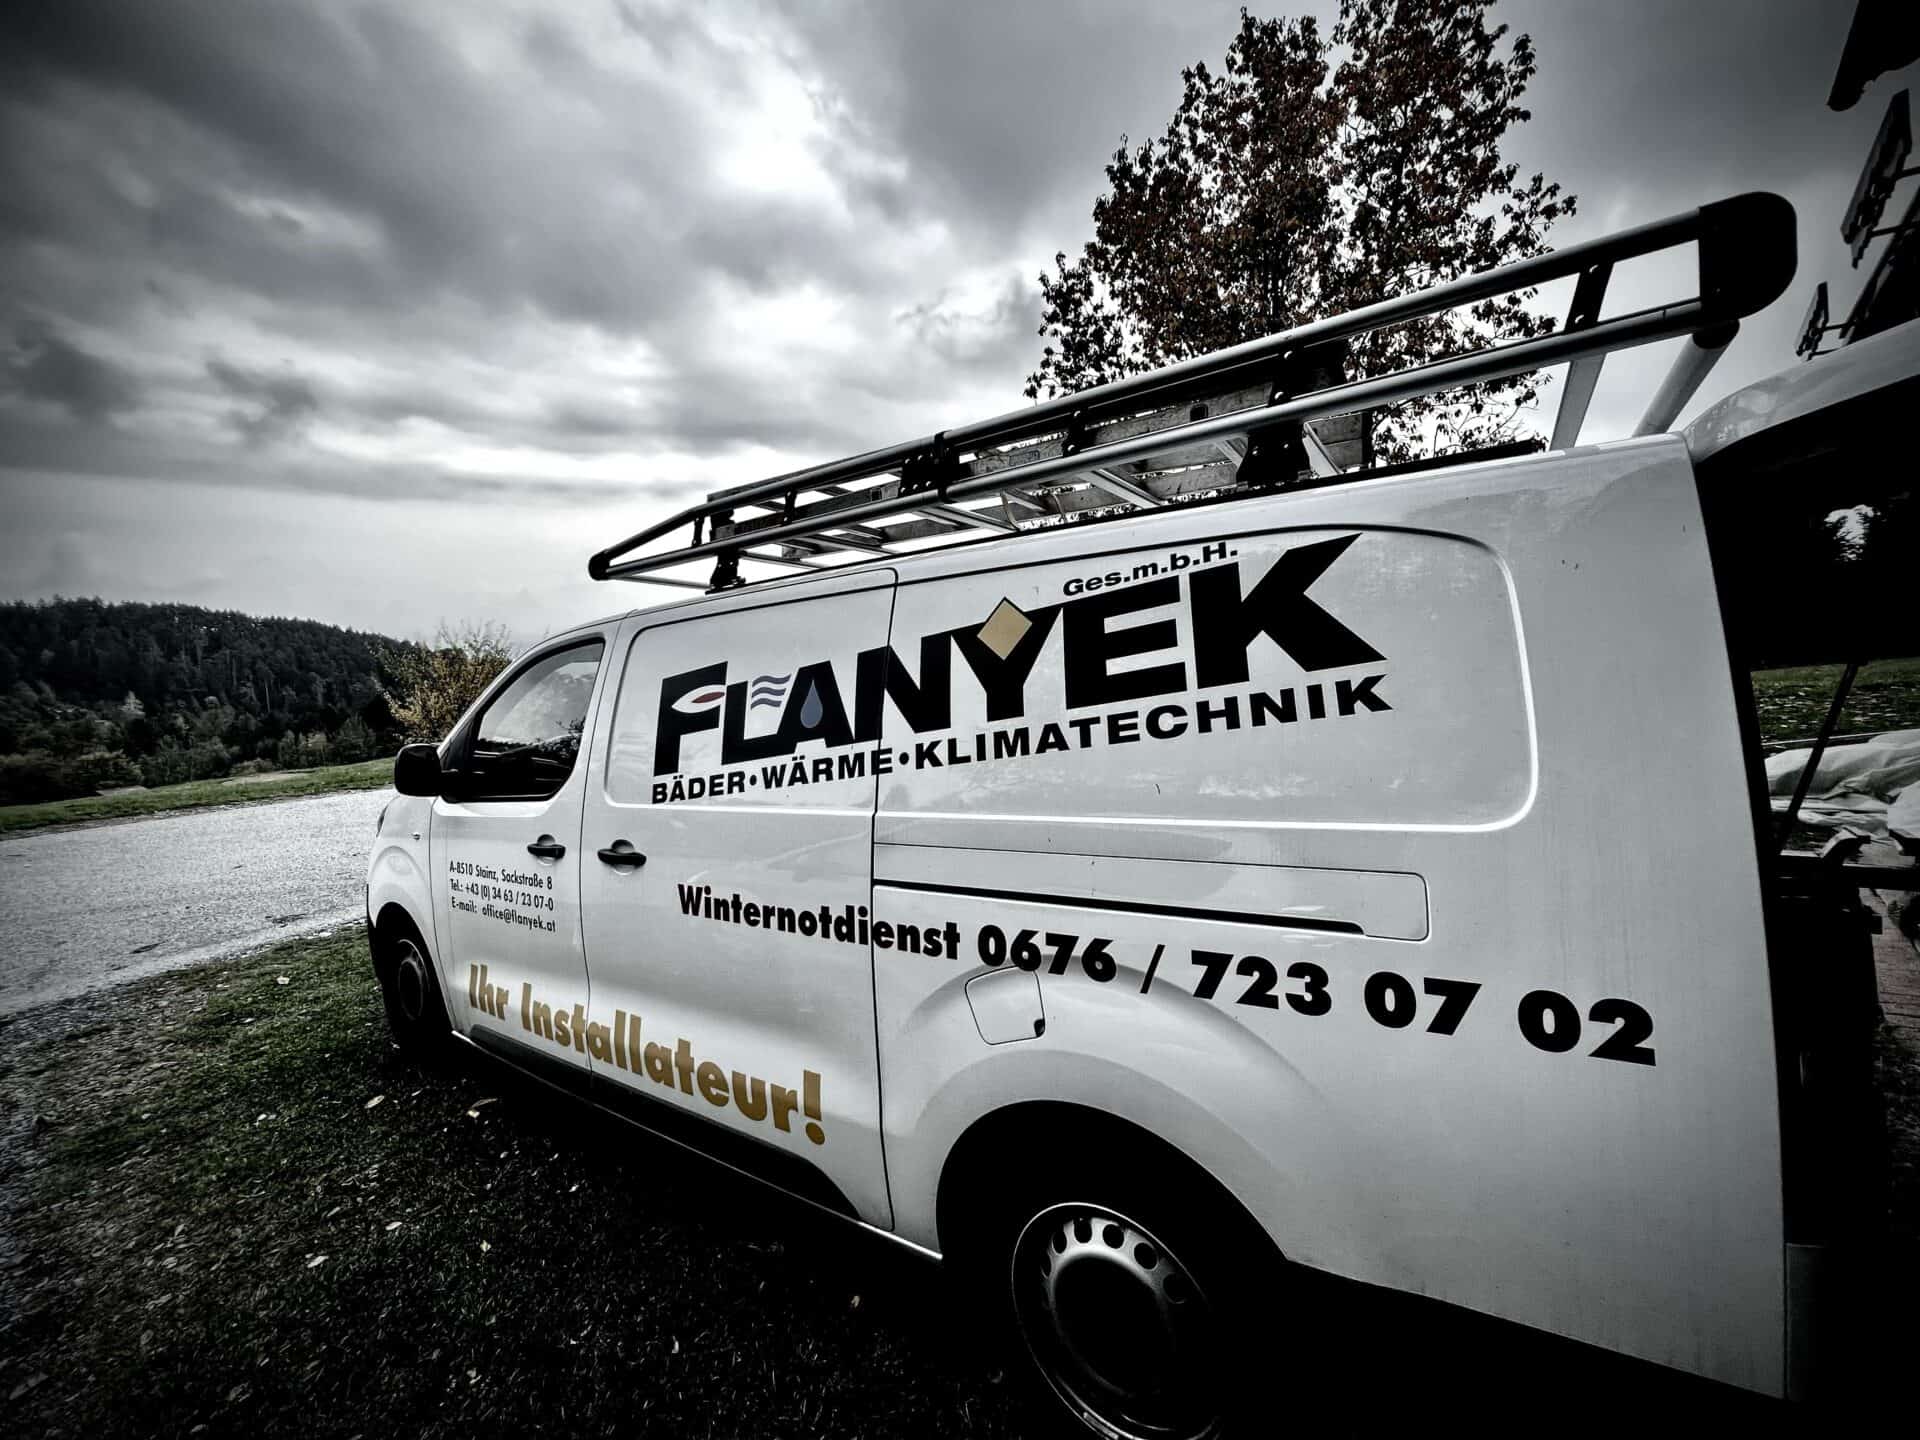 Flanyek Installateur Notdienst Fahrzeug im Einsatz